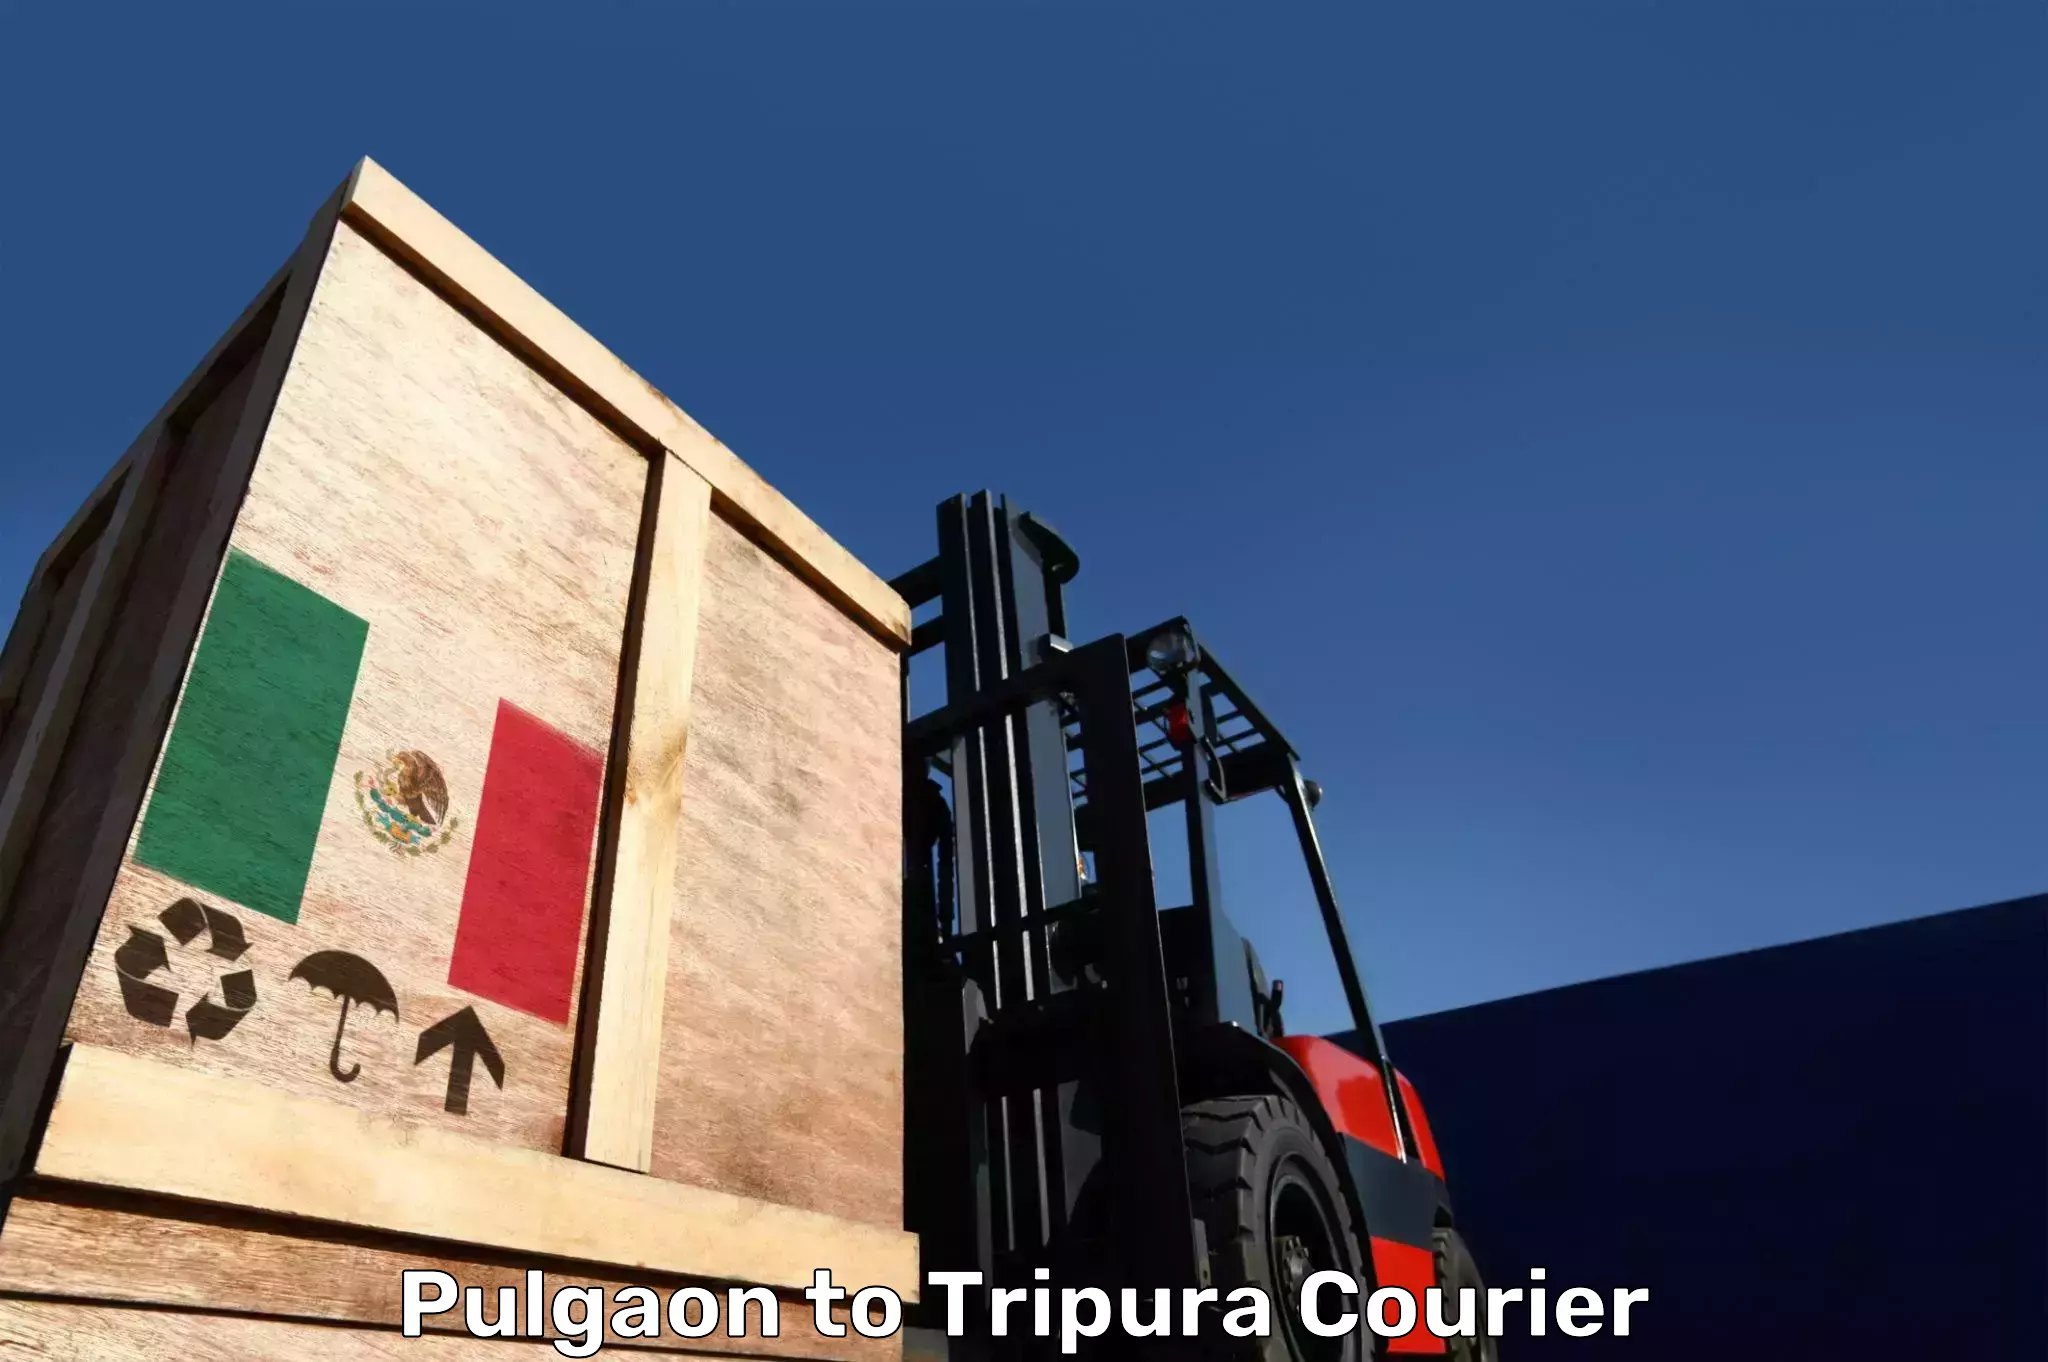 Electronic items luggage shipping Pulgaon to Udaipur Tripura